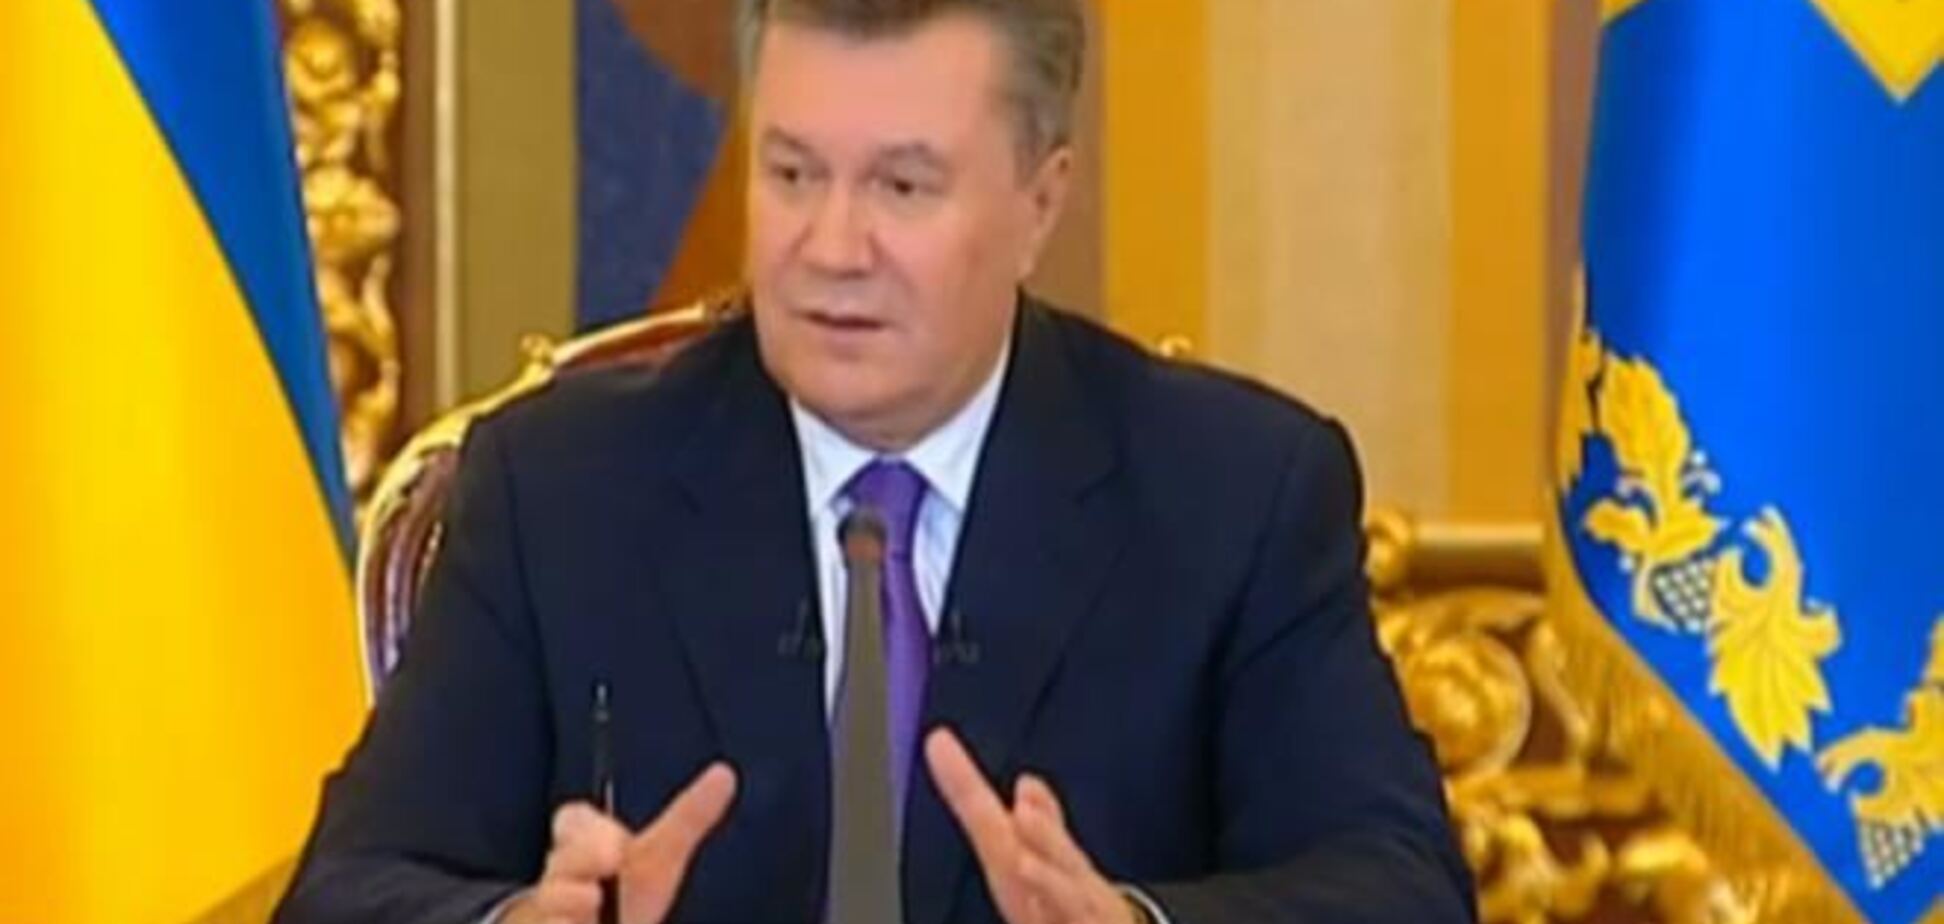 Путін і Янукович дали прес-конференцію в один і той же час, щоб зняти всі питання - експерт 